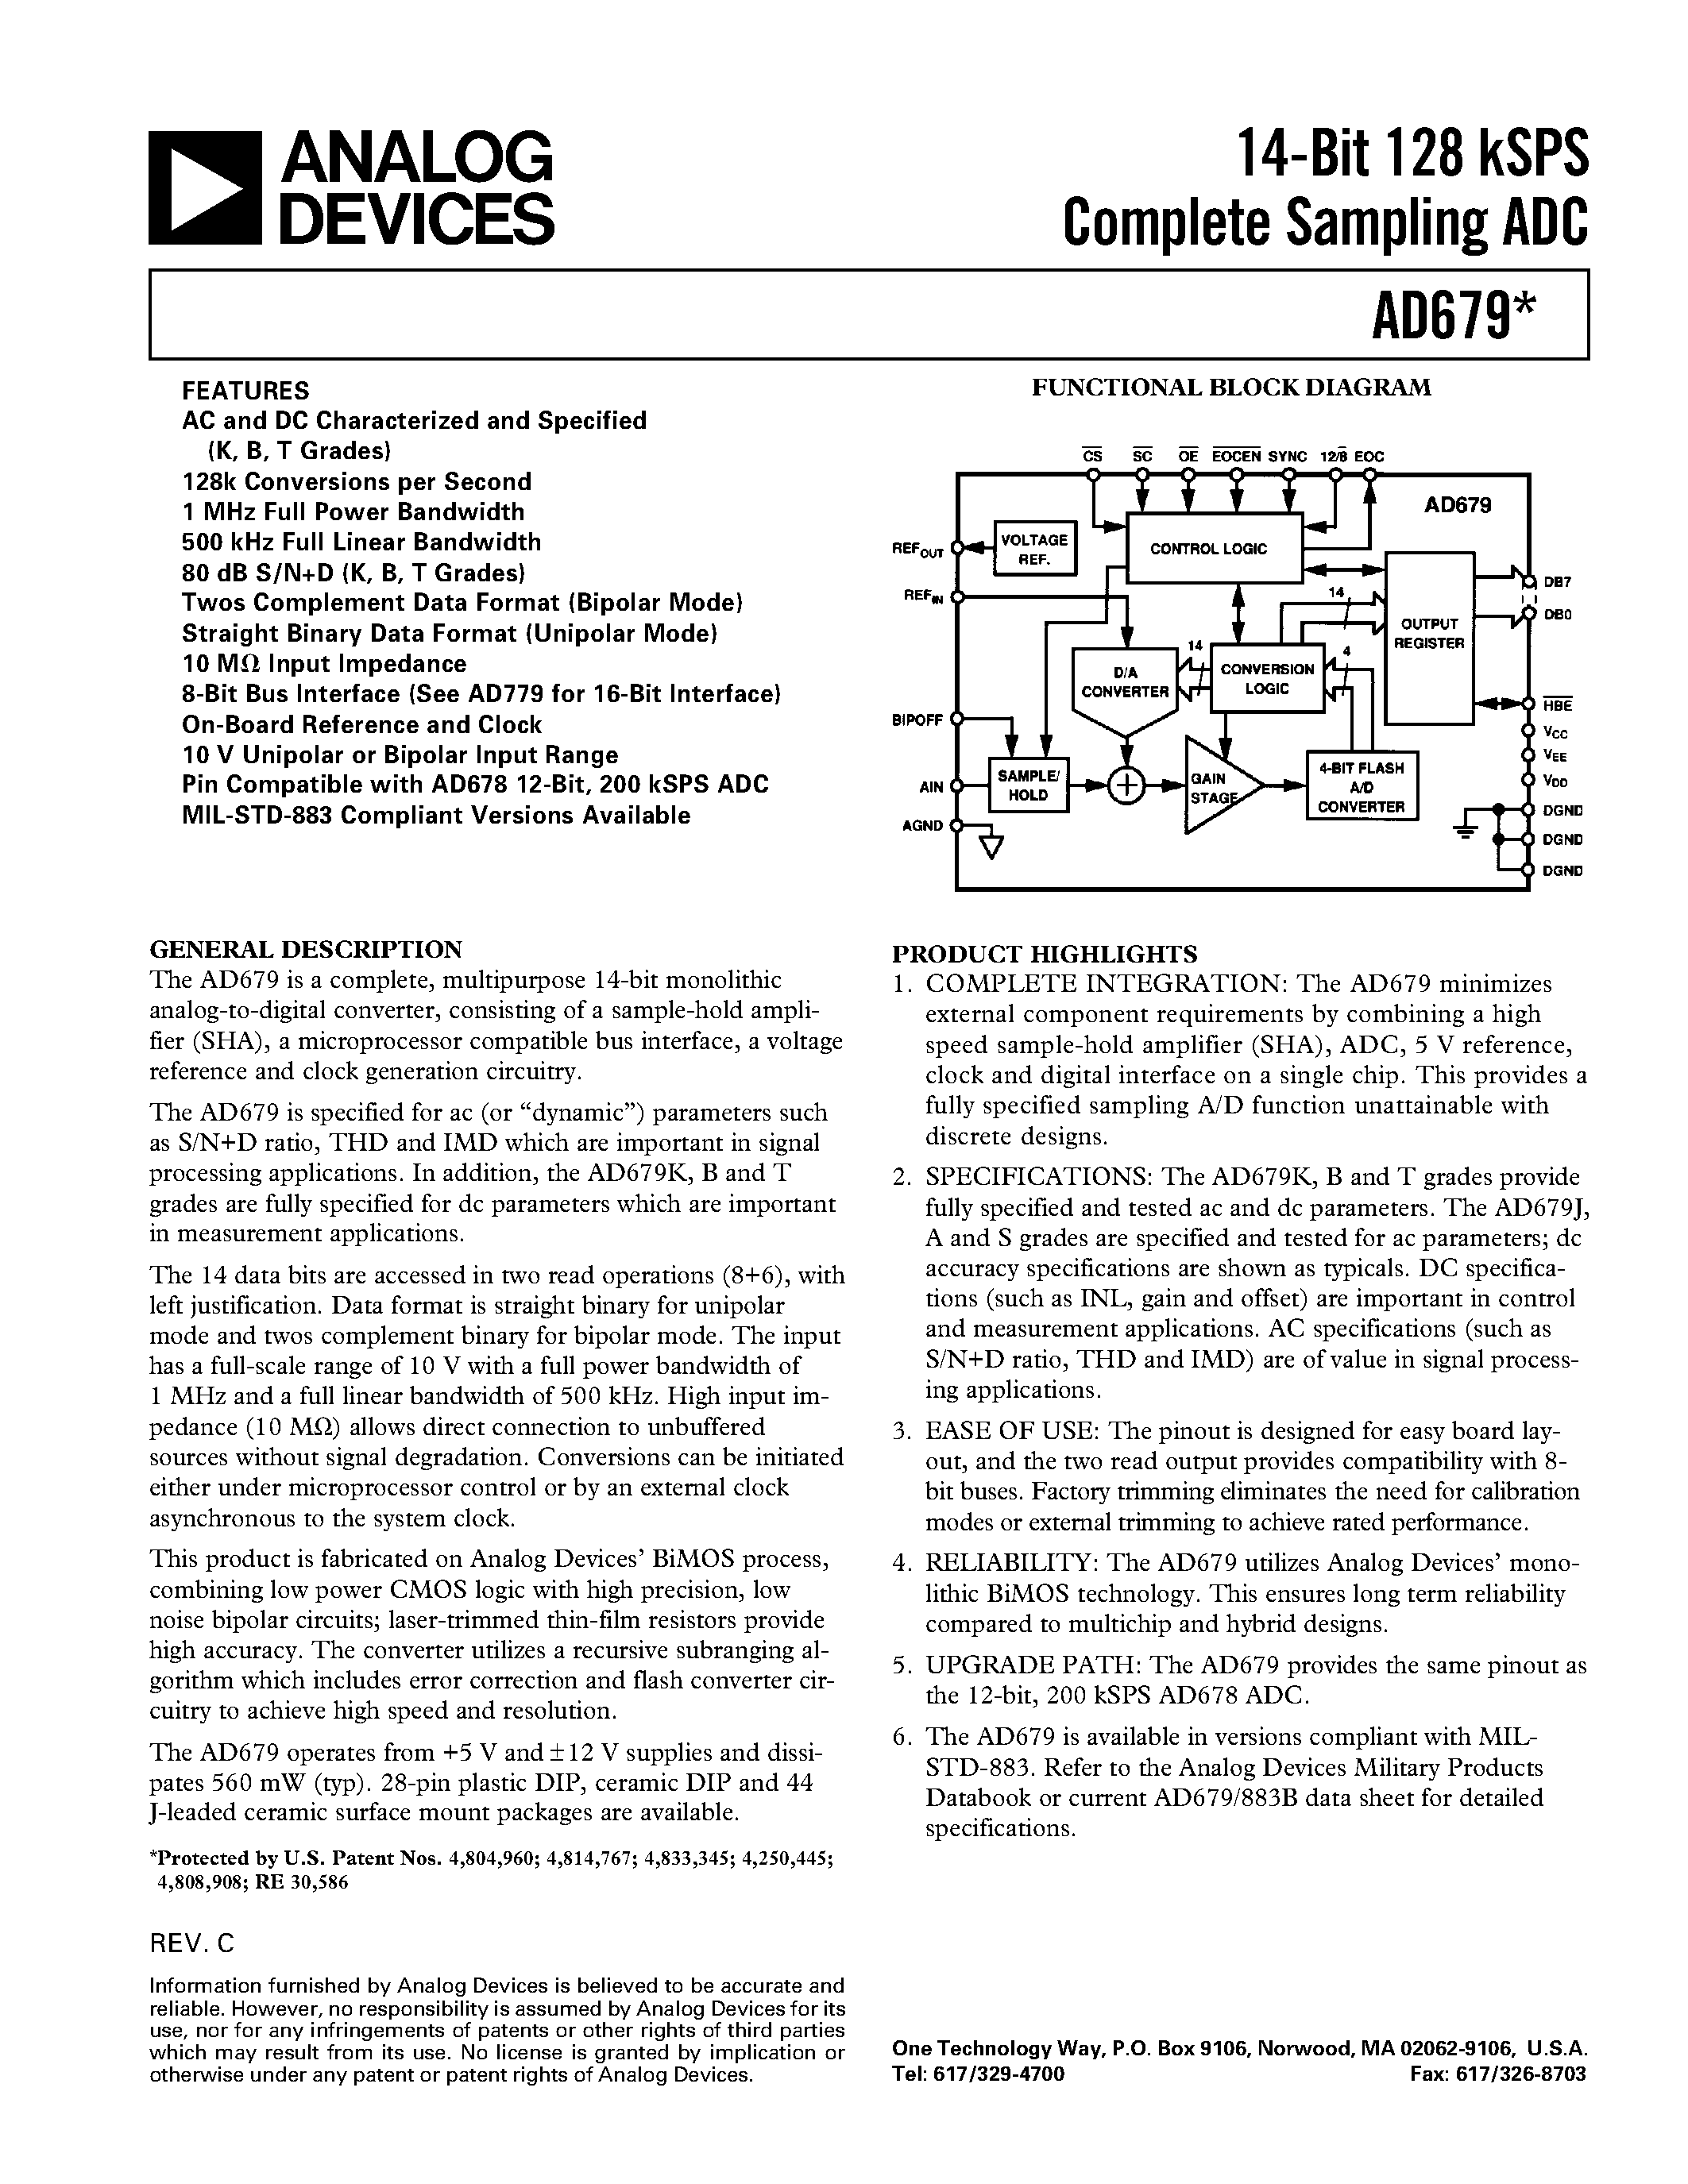 Даташит AD679AD - 14-Bit 128 kSPS Complete Sampling ADC страница 1